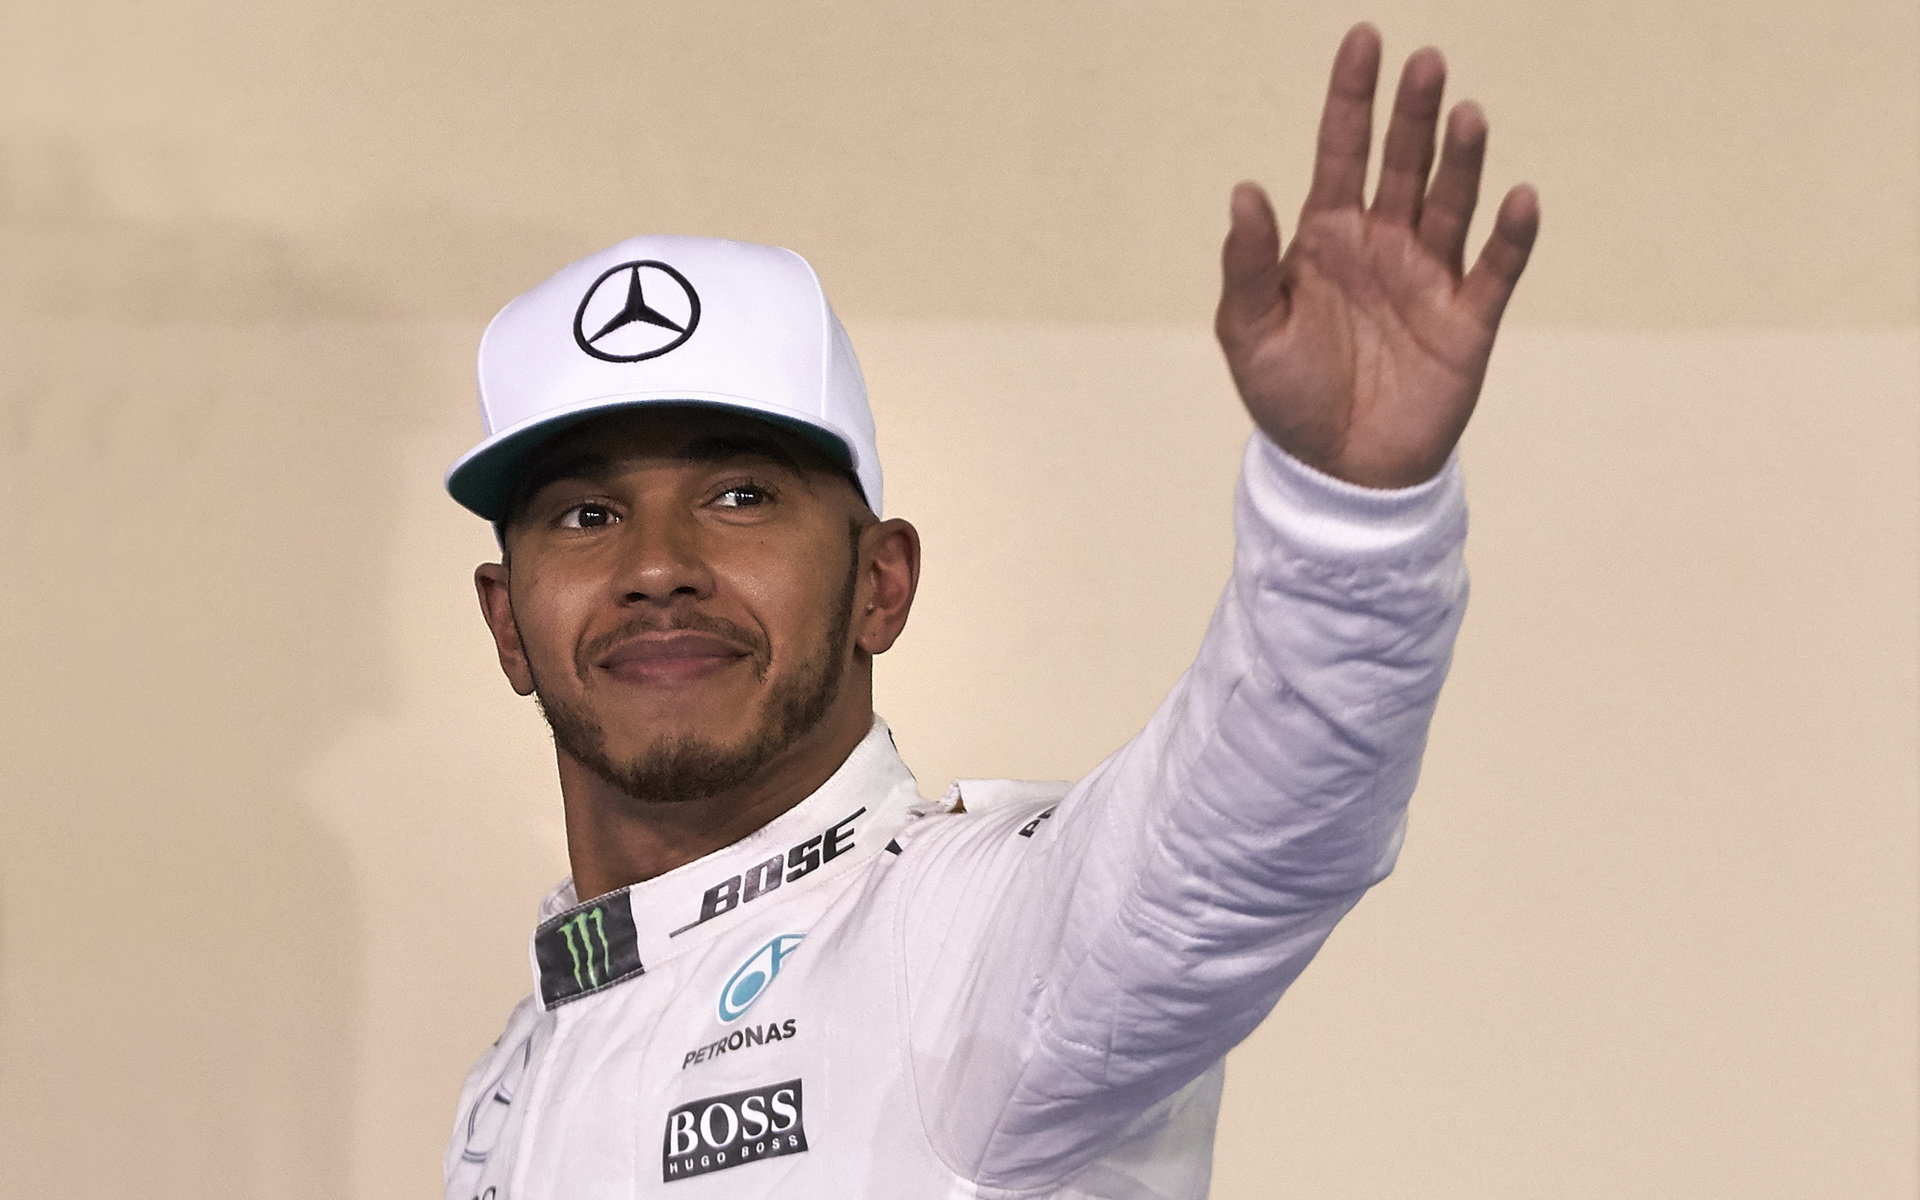 Jak posuzuje svého nového týmového kolegu Lewis Hamilton? - F1news.cz